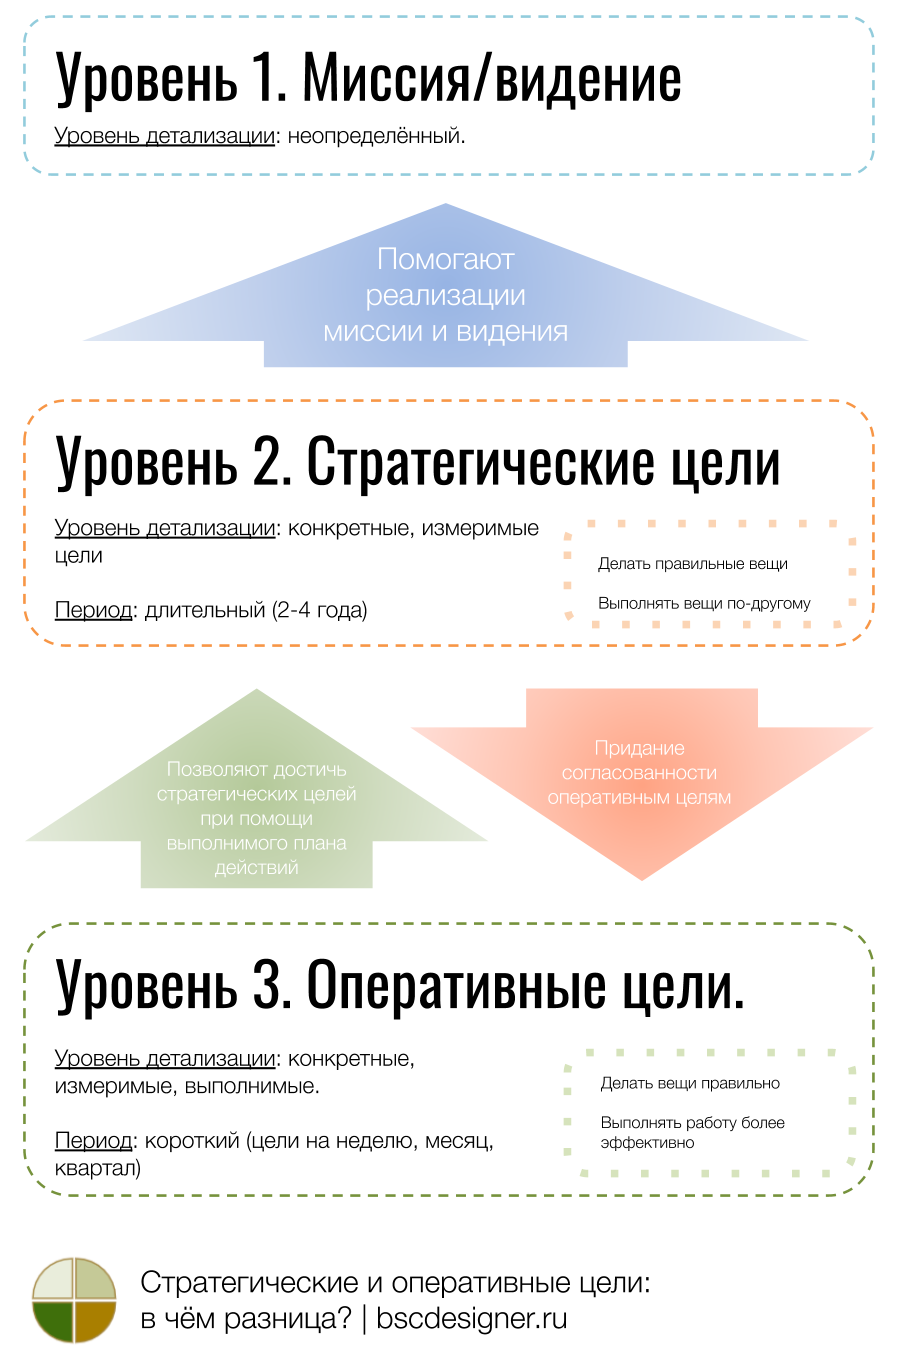 [Инфографика] Разница между стратегическими и оперативными целями